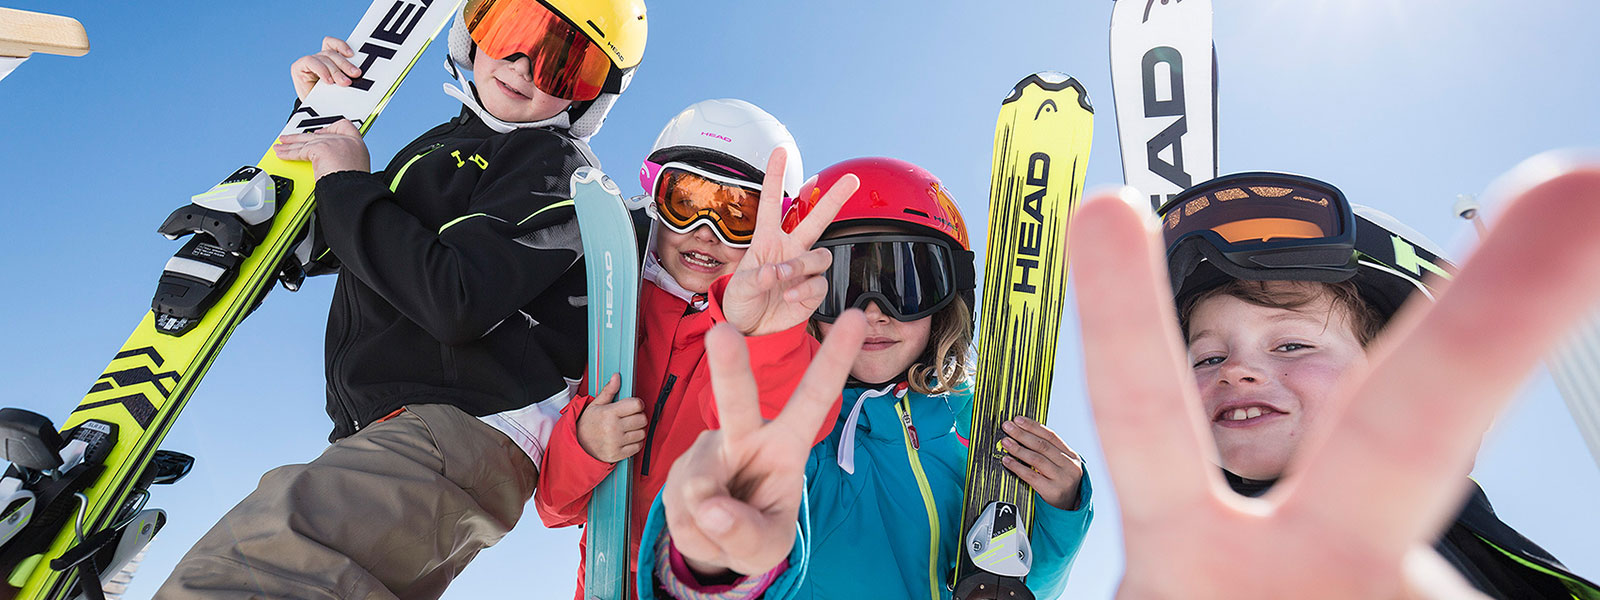 Skischule Hochzillertal